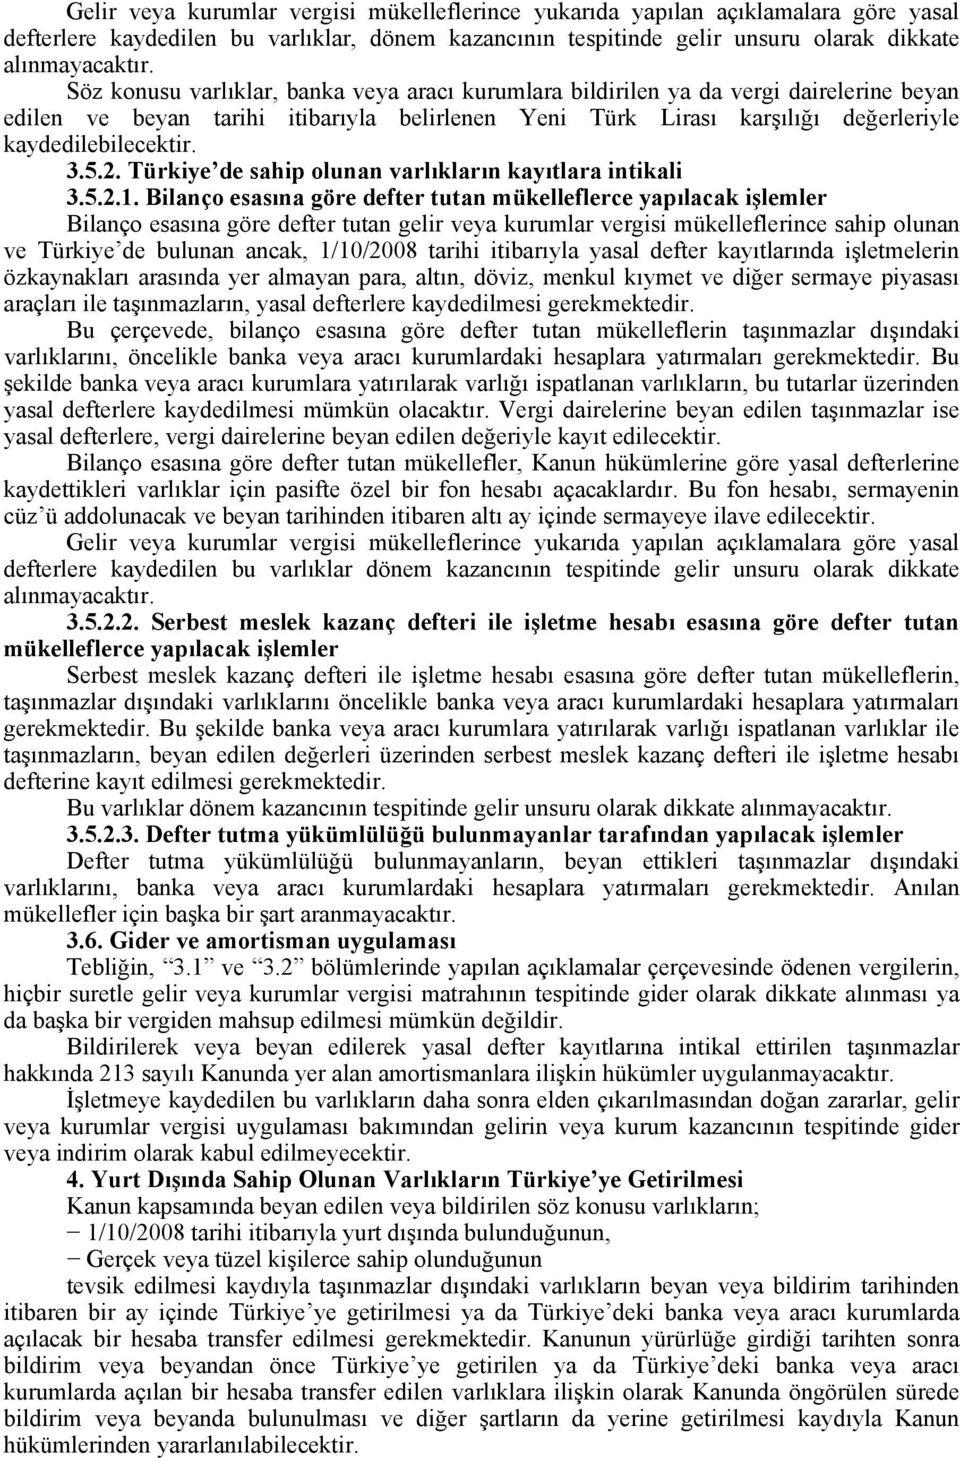 2. Türkiye de sahip olunan varlıkların kayıtlara intikali 3.5.2.1.